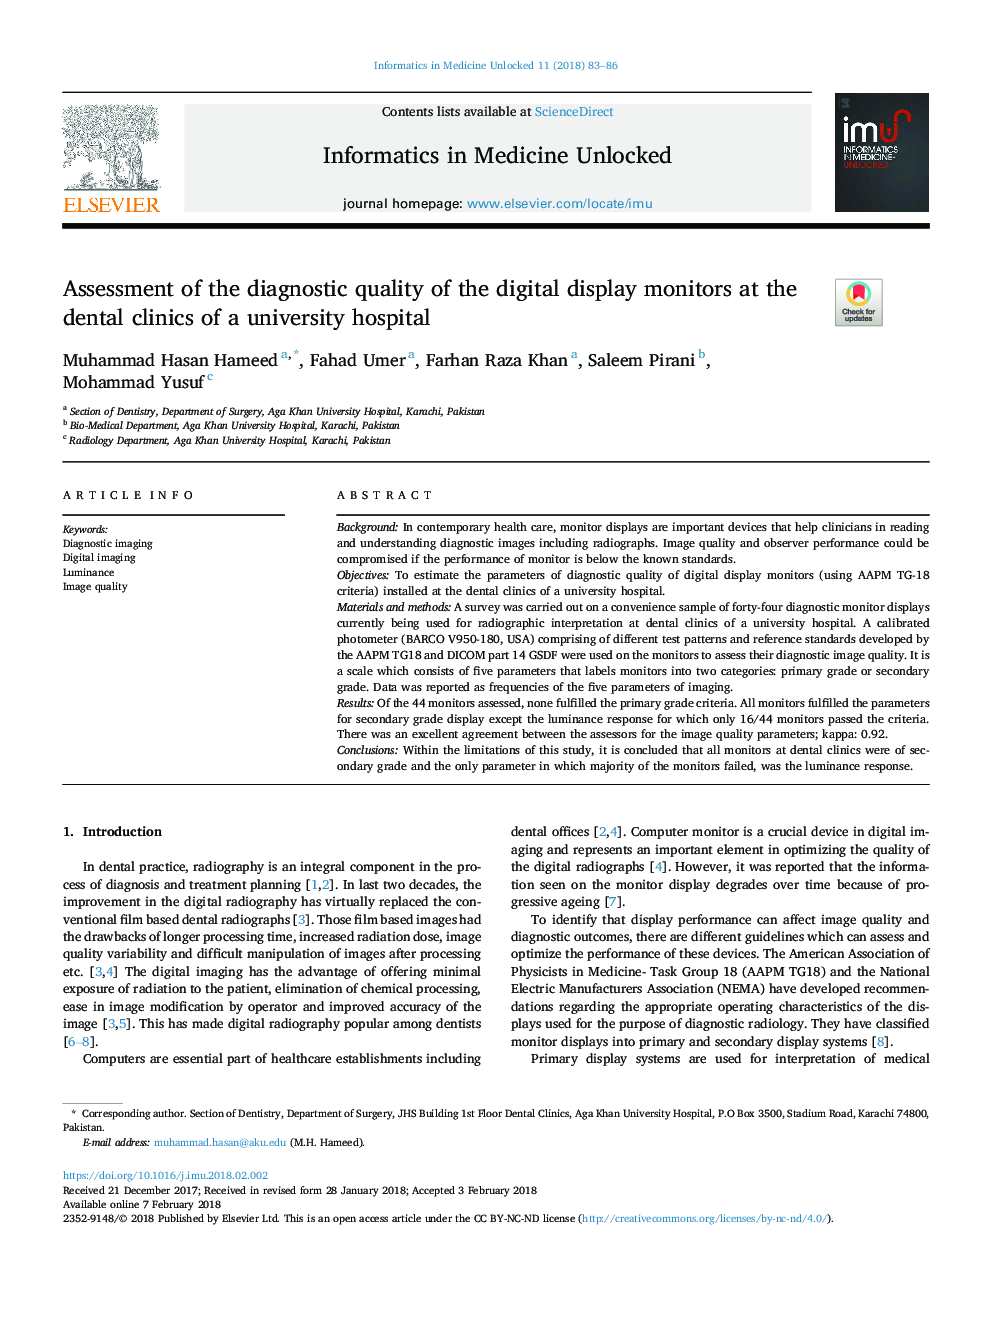 ارزیابی کیفیت تشخیصی مانیتورهای صفحه نمایش دیجیتال در کلینیک های دندان پزشکی بیمارستان دانشگاه 